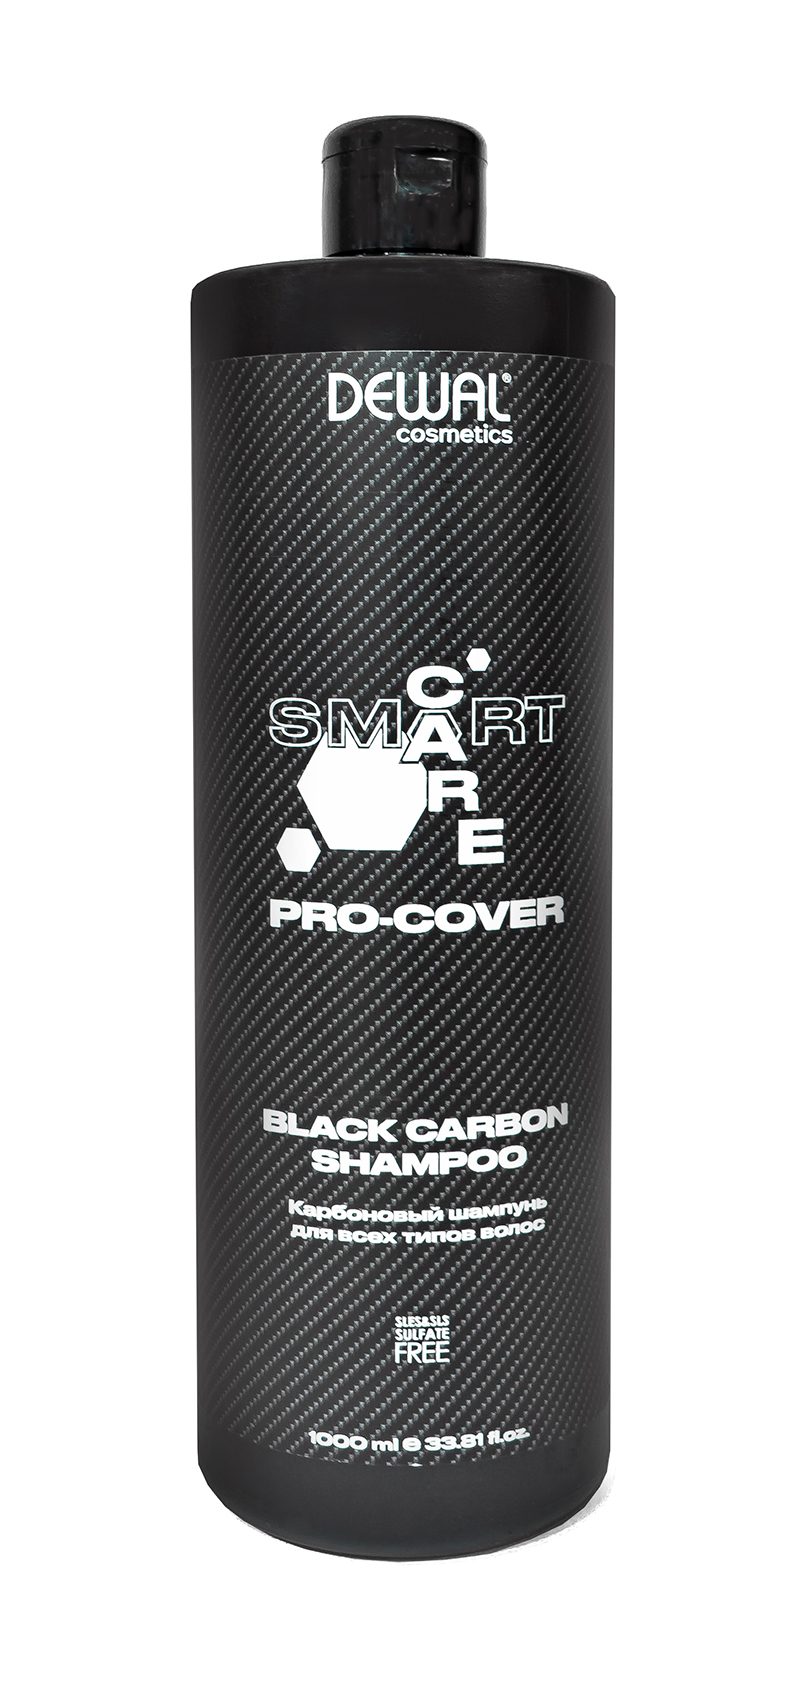 Карбоновый шампунь для всех типов волос SMART CARE PRO-COVER Black Carbon Shampoo, 1000 мл DC